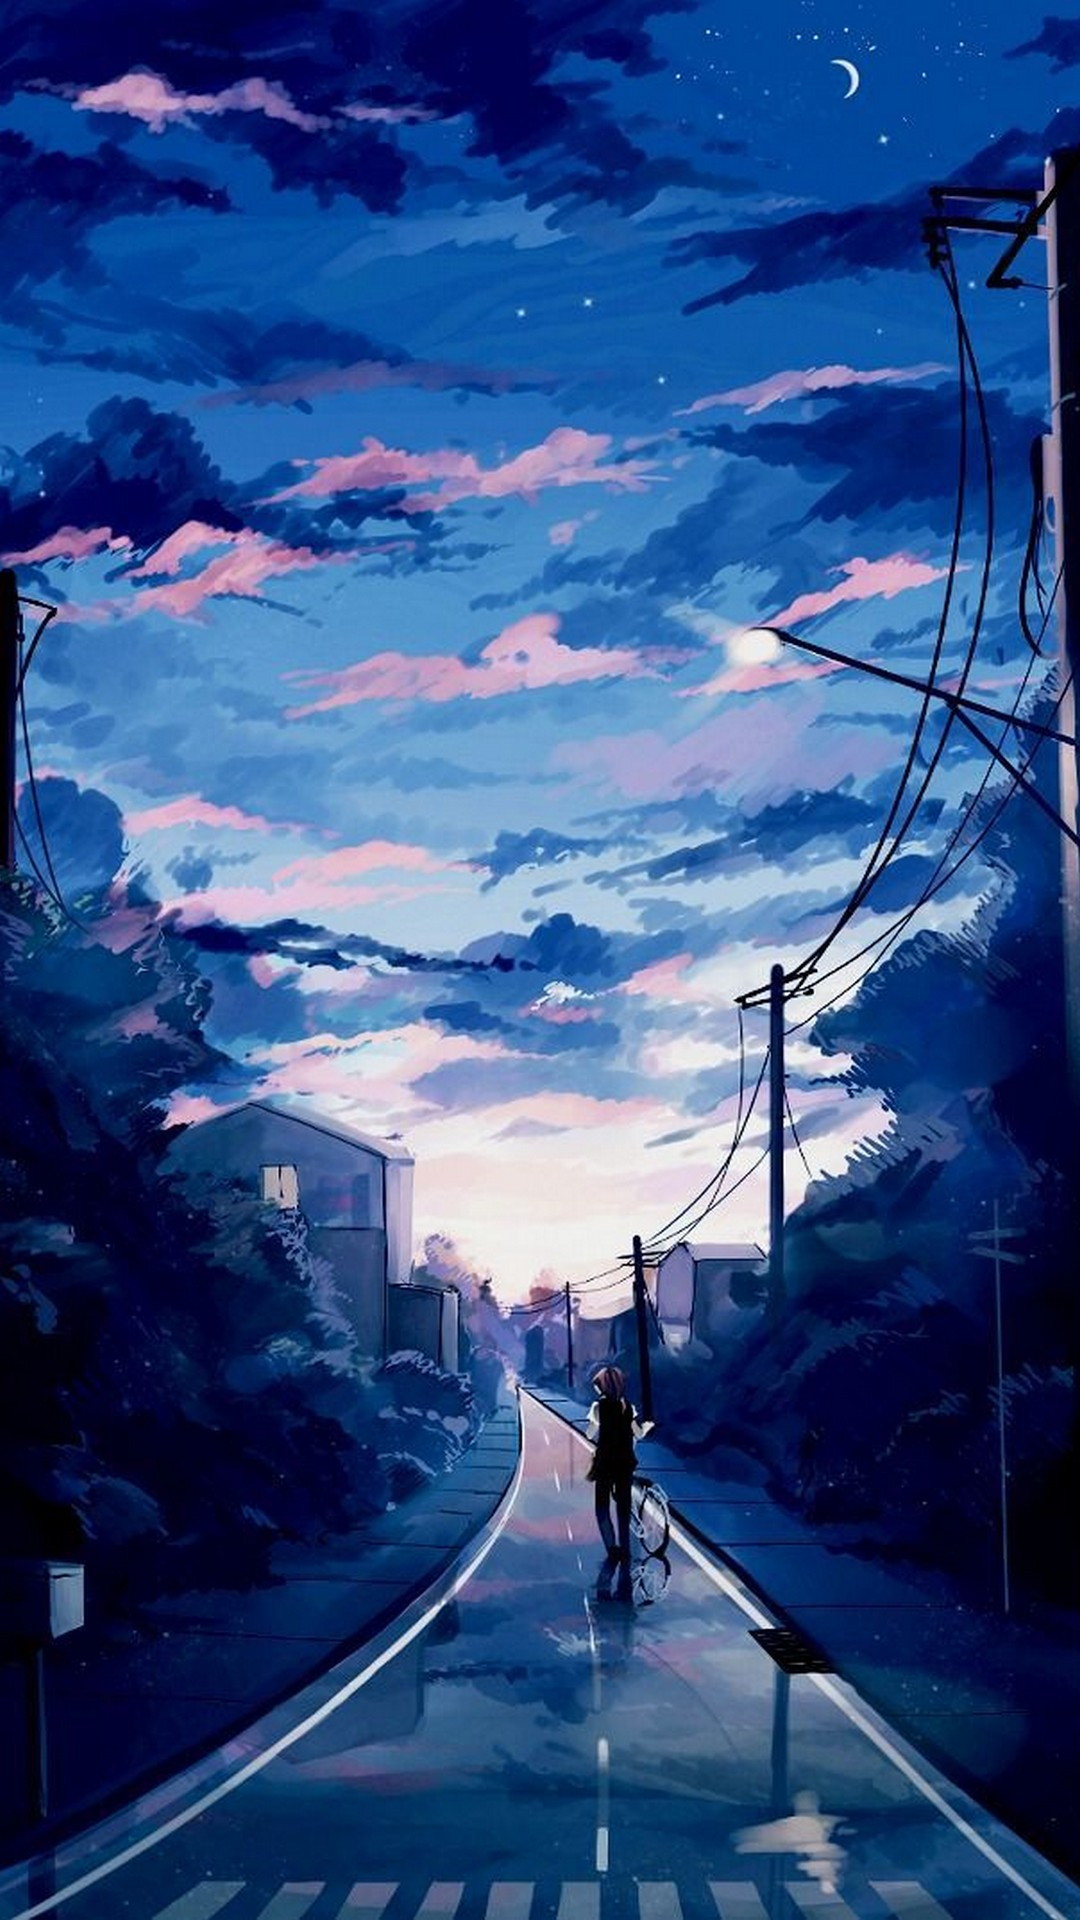 Light Blue Anime Aesthetic Wallpapers